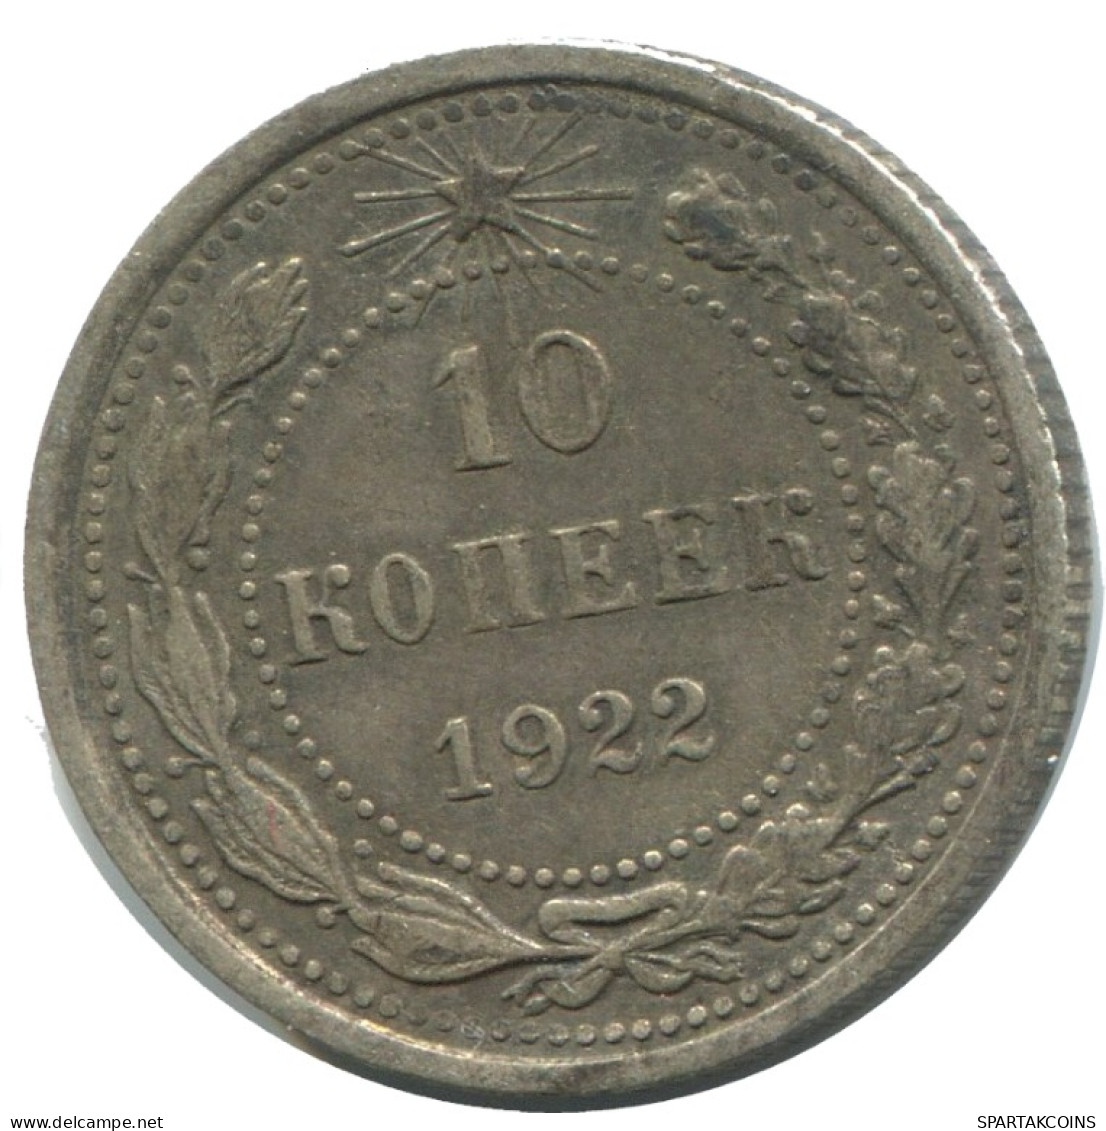 10 KOPEKS 1923 RUSSLAND RUSSIA RSFSR SILBER Münze HIGH GRADE #AE870.4.D.A - Russland